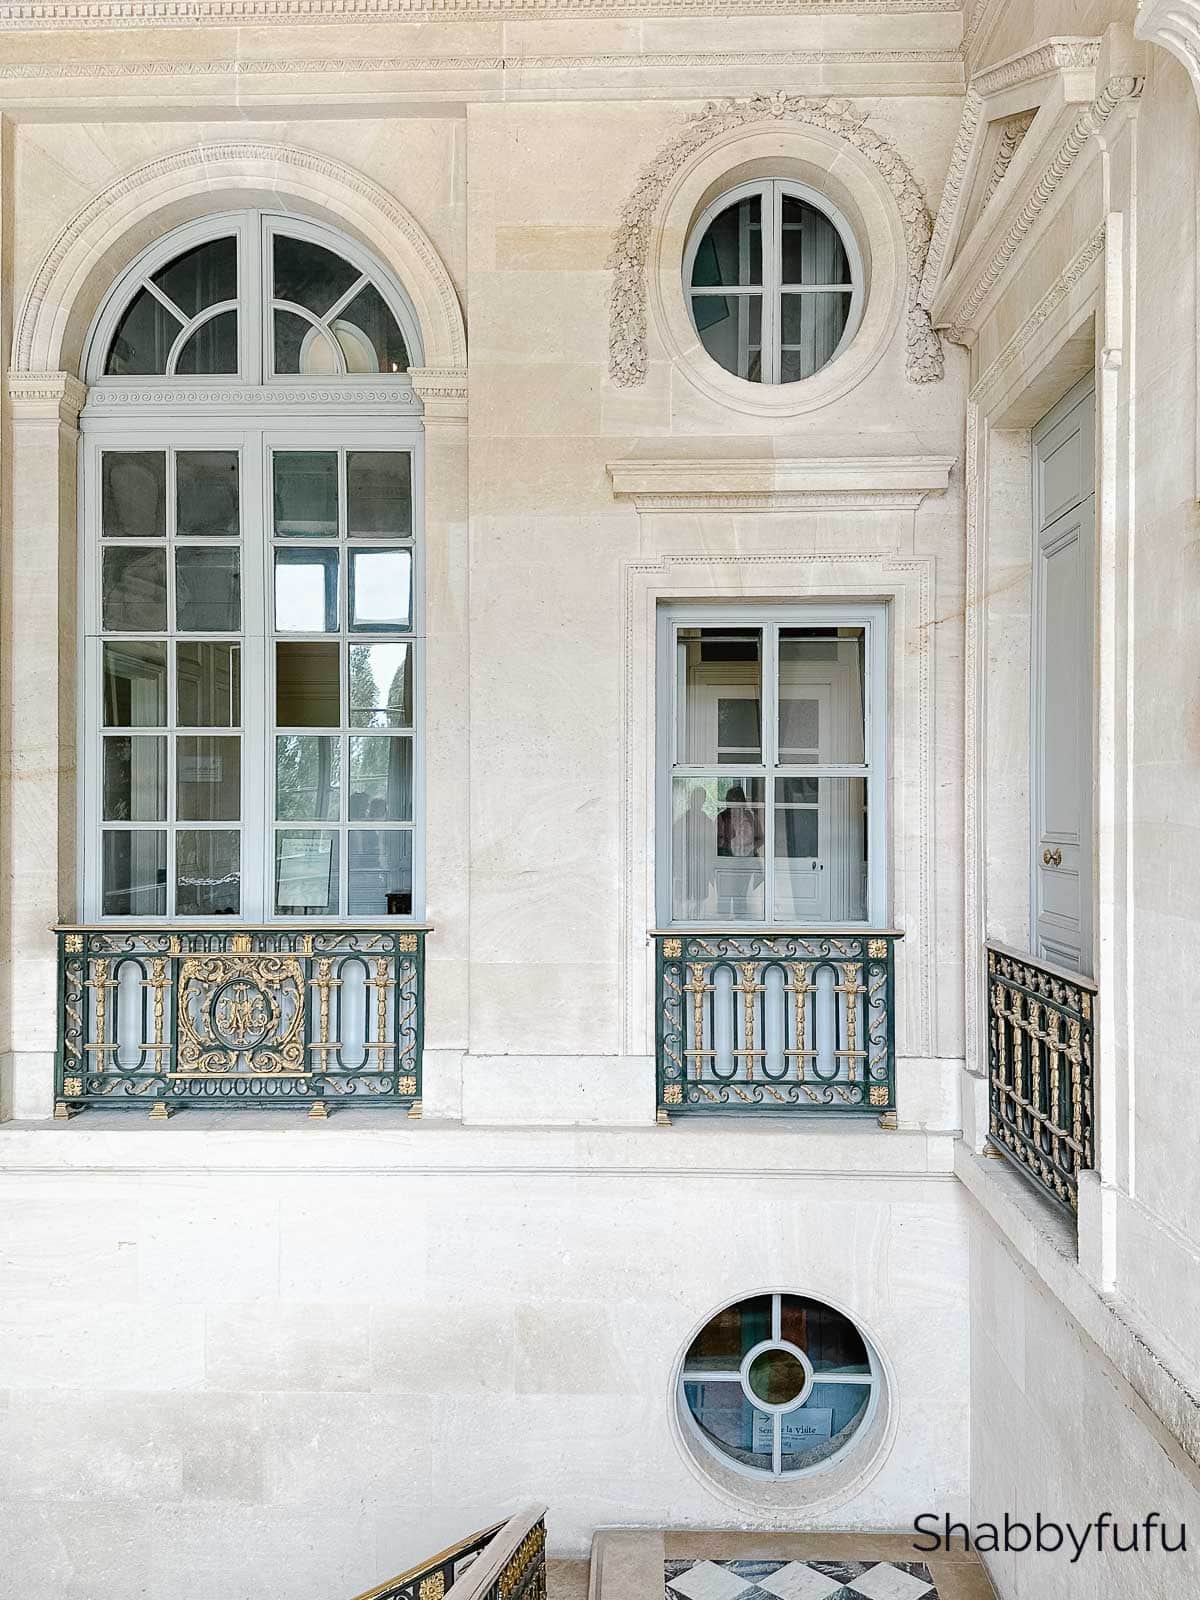 Le Petit Trianon at Versailles